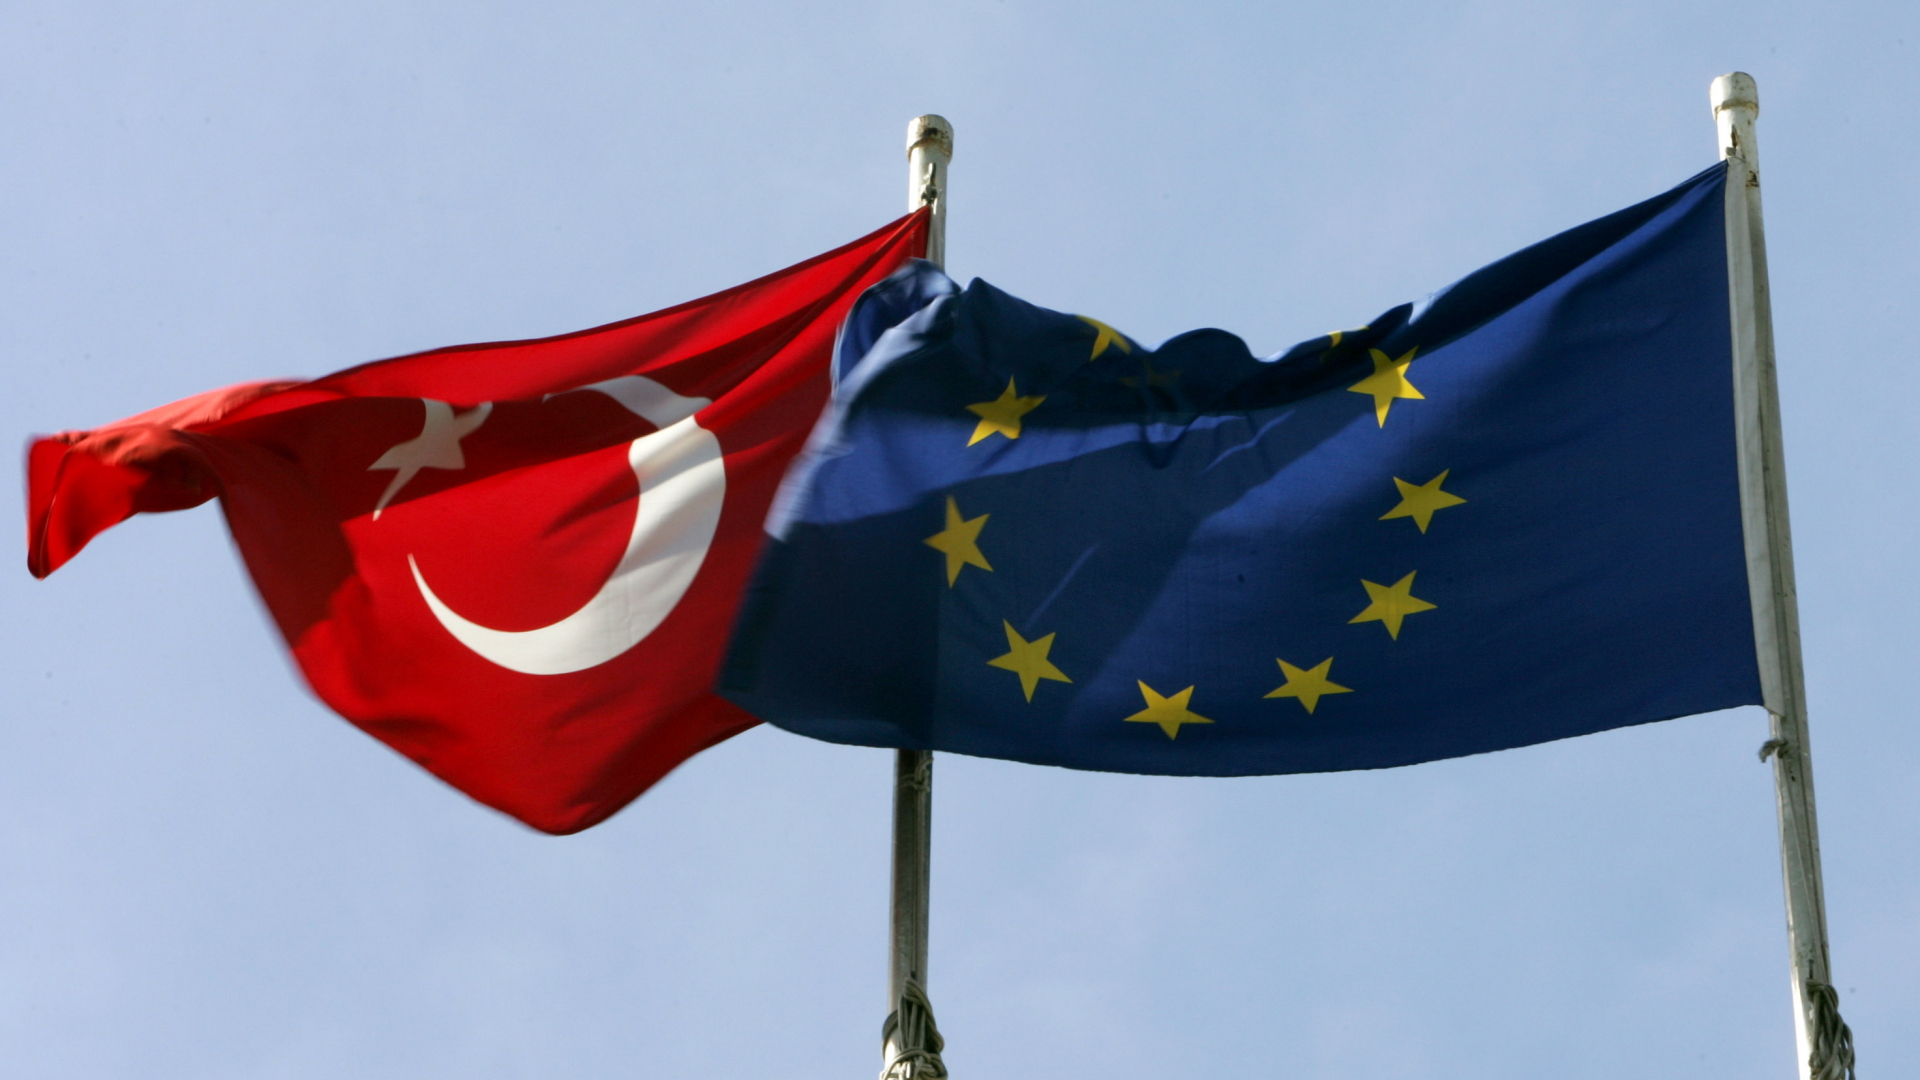 Flagge der Türkei und der EU | dpa